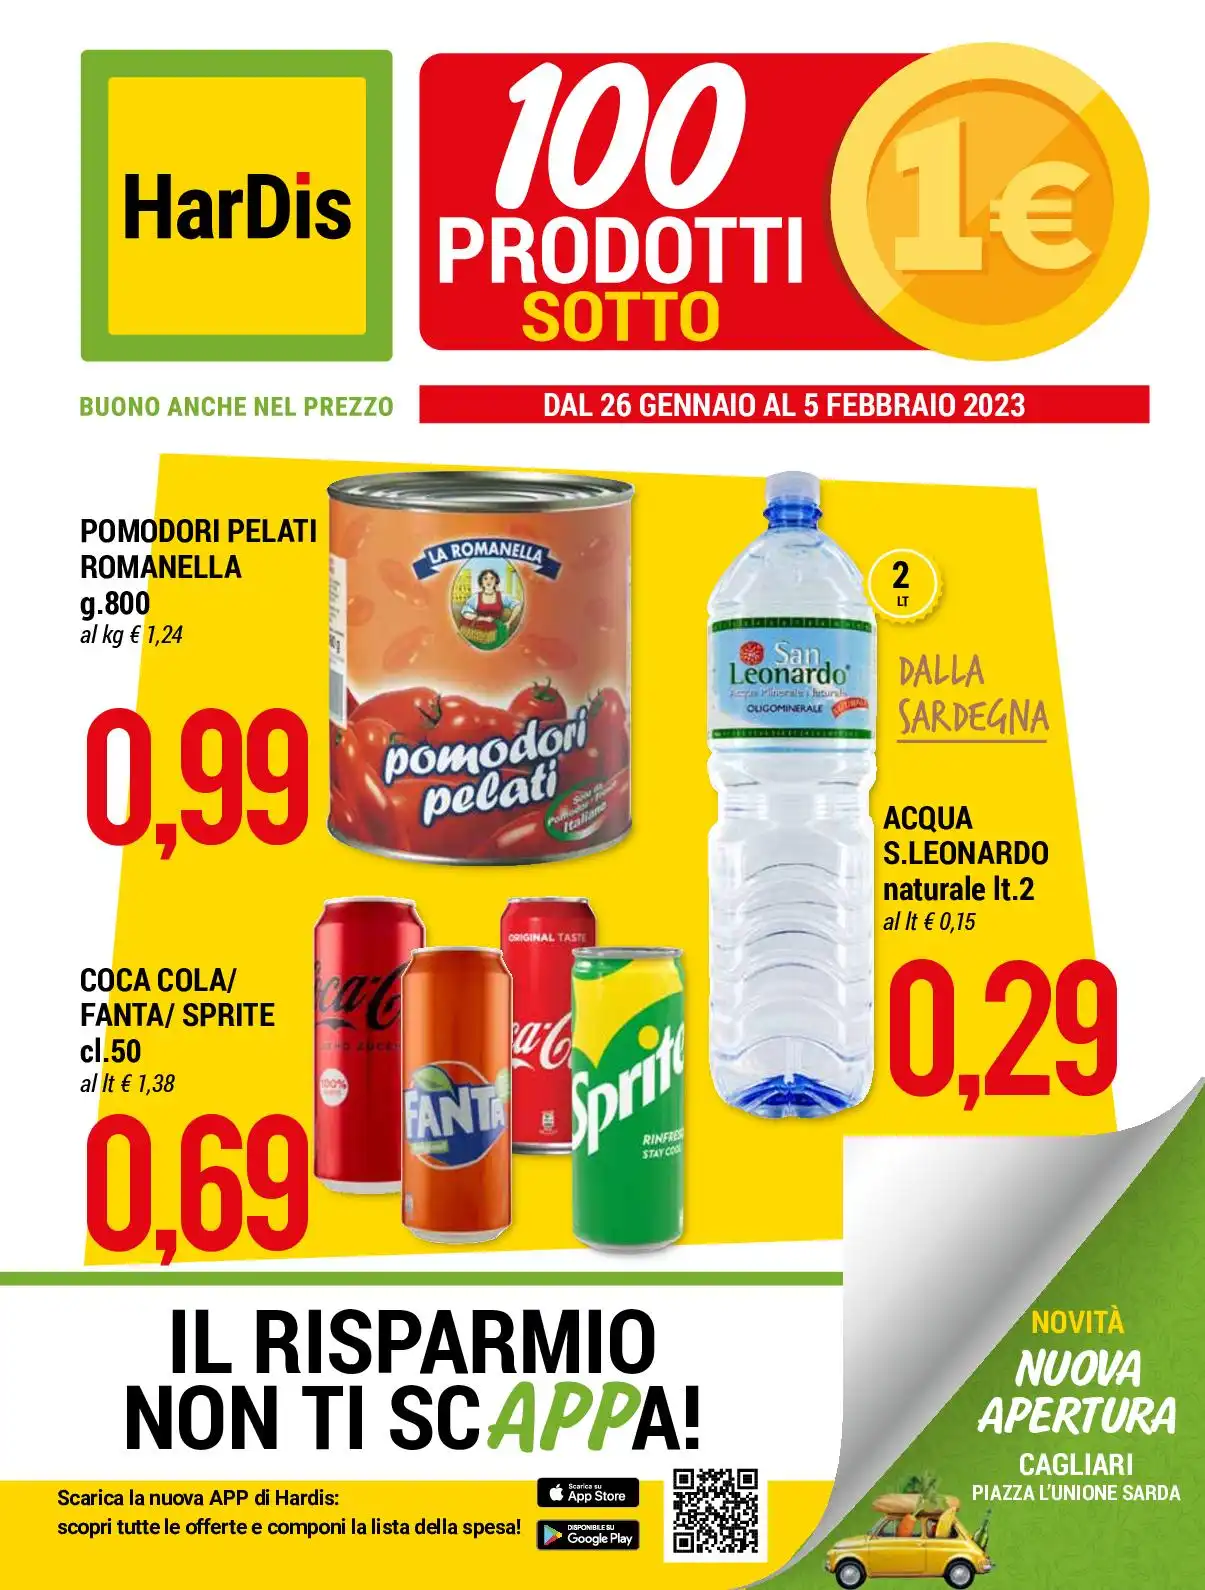 Volantino HarDis 100 Prodotti Sotto 1€ fino al 5/02 dal 26/01/2023